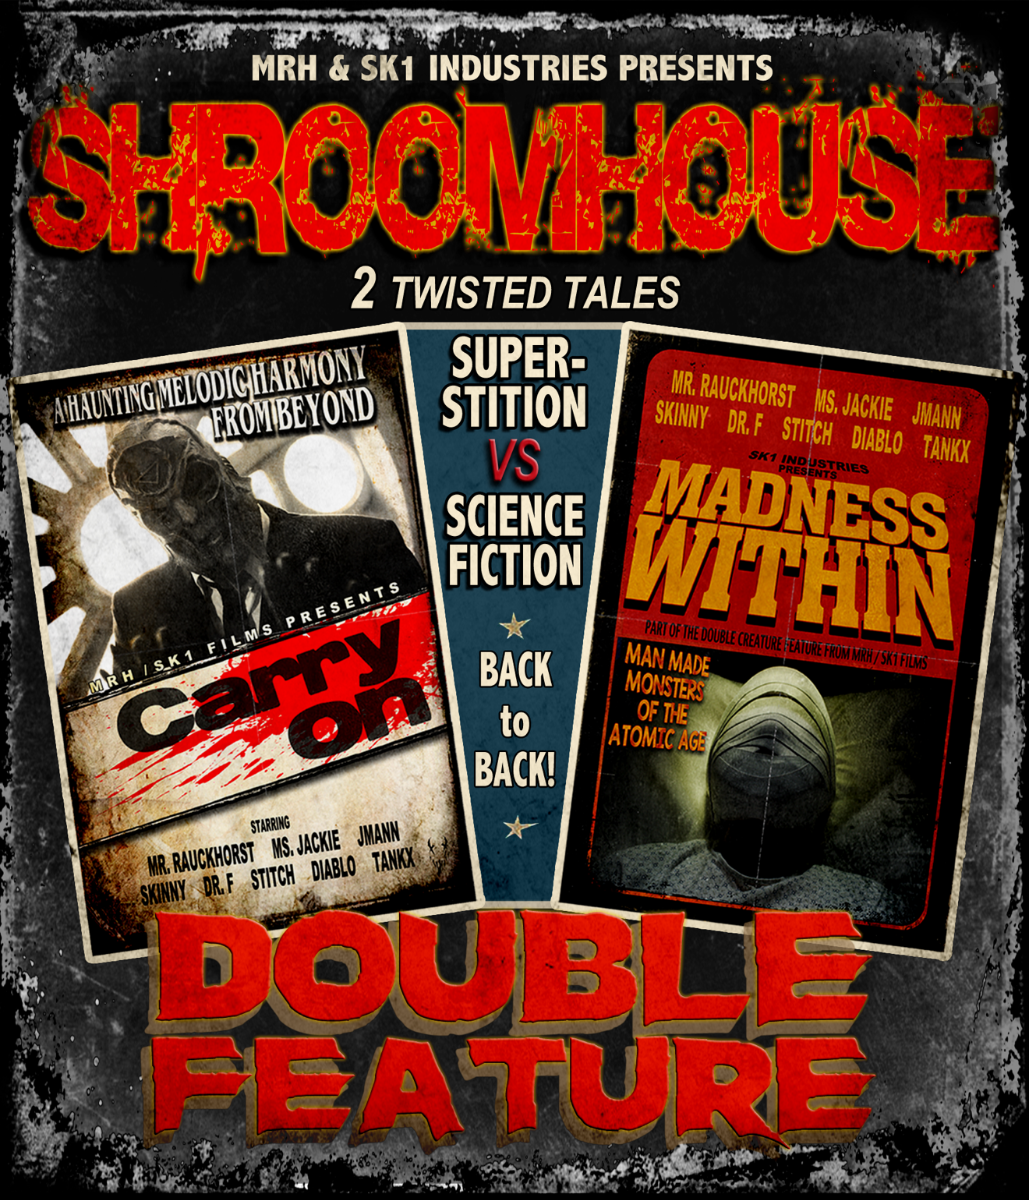 MUSHROOMHEAD - annunciano l'evento in anteprima per il doppio film in stile grindhouse “Shroomhouse”